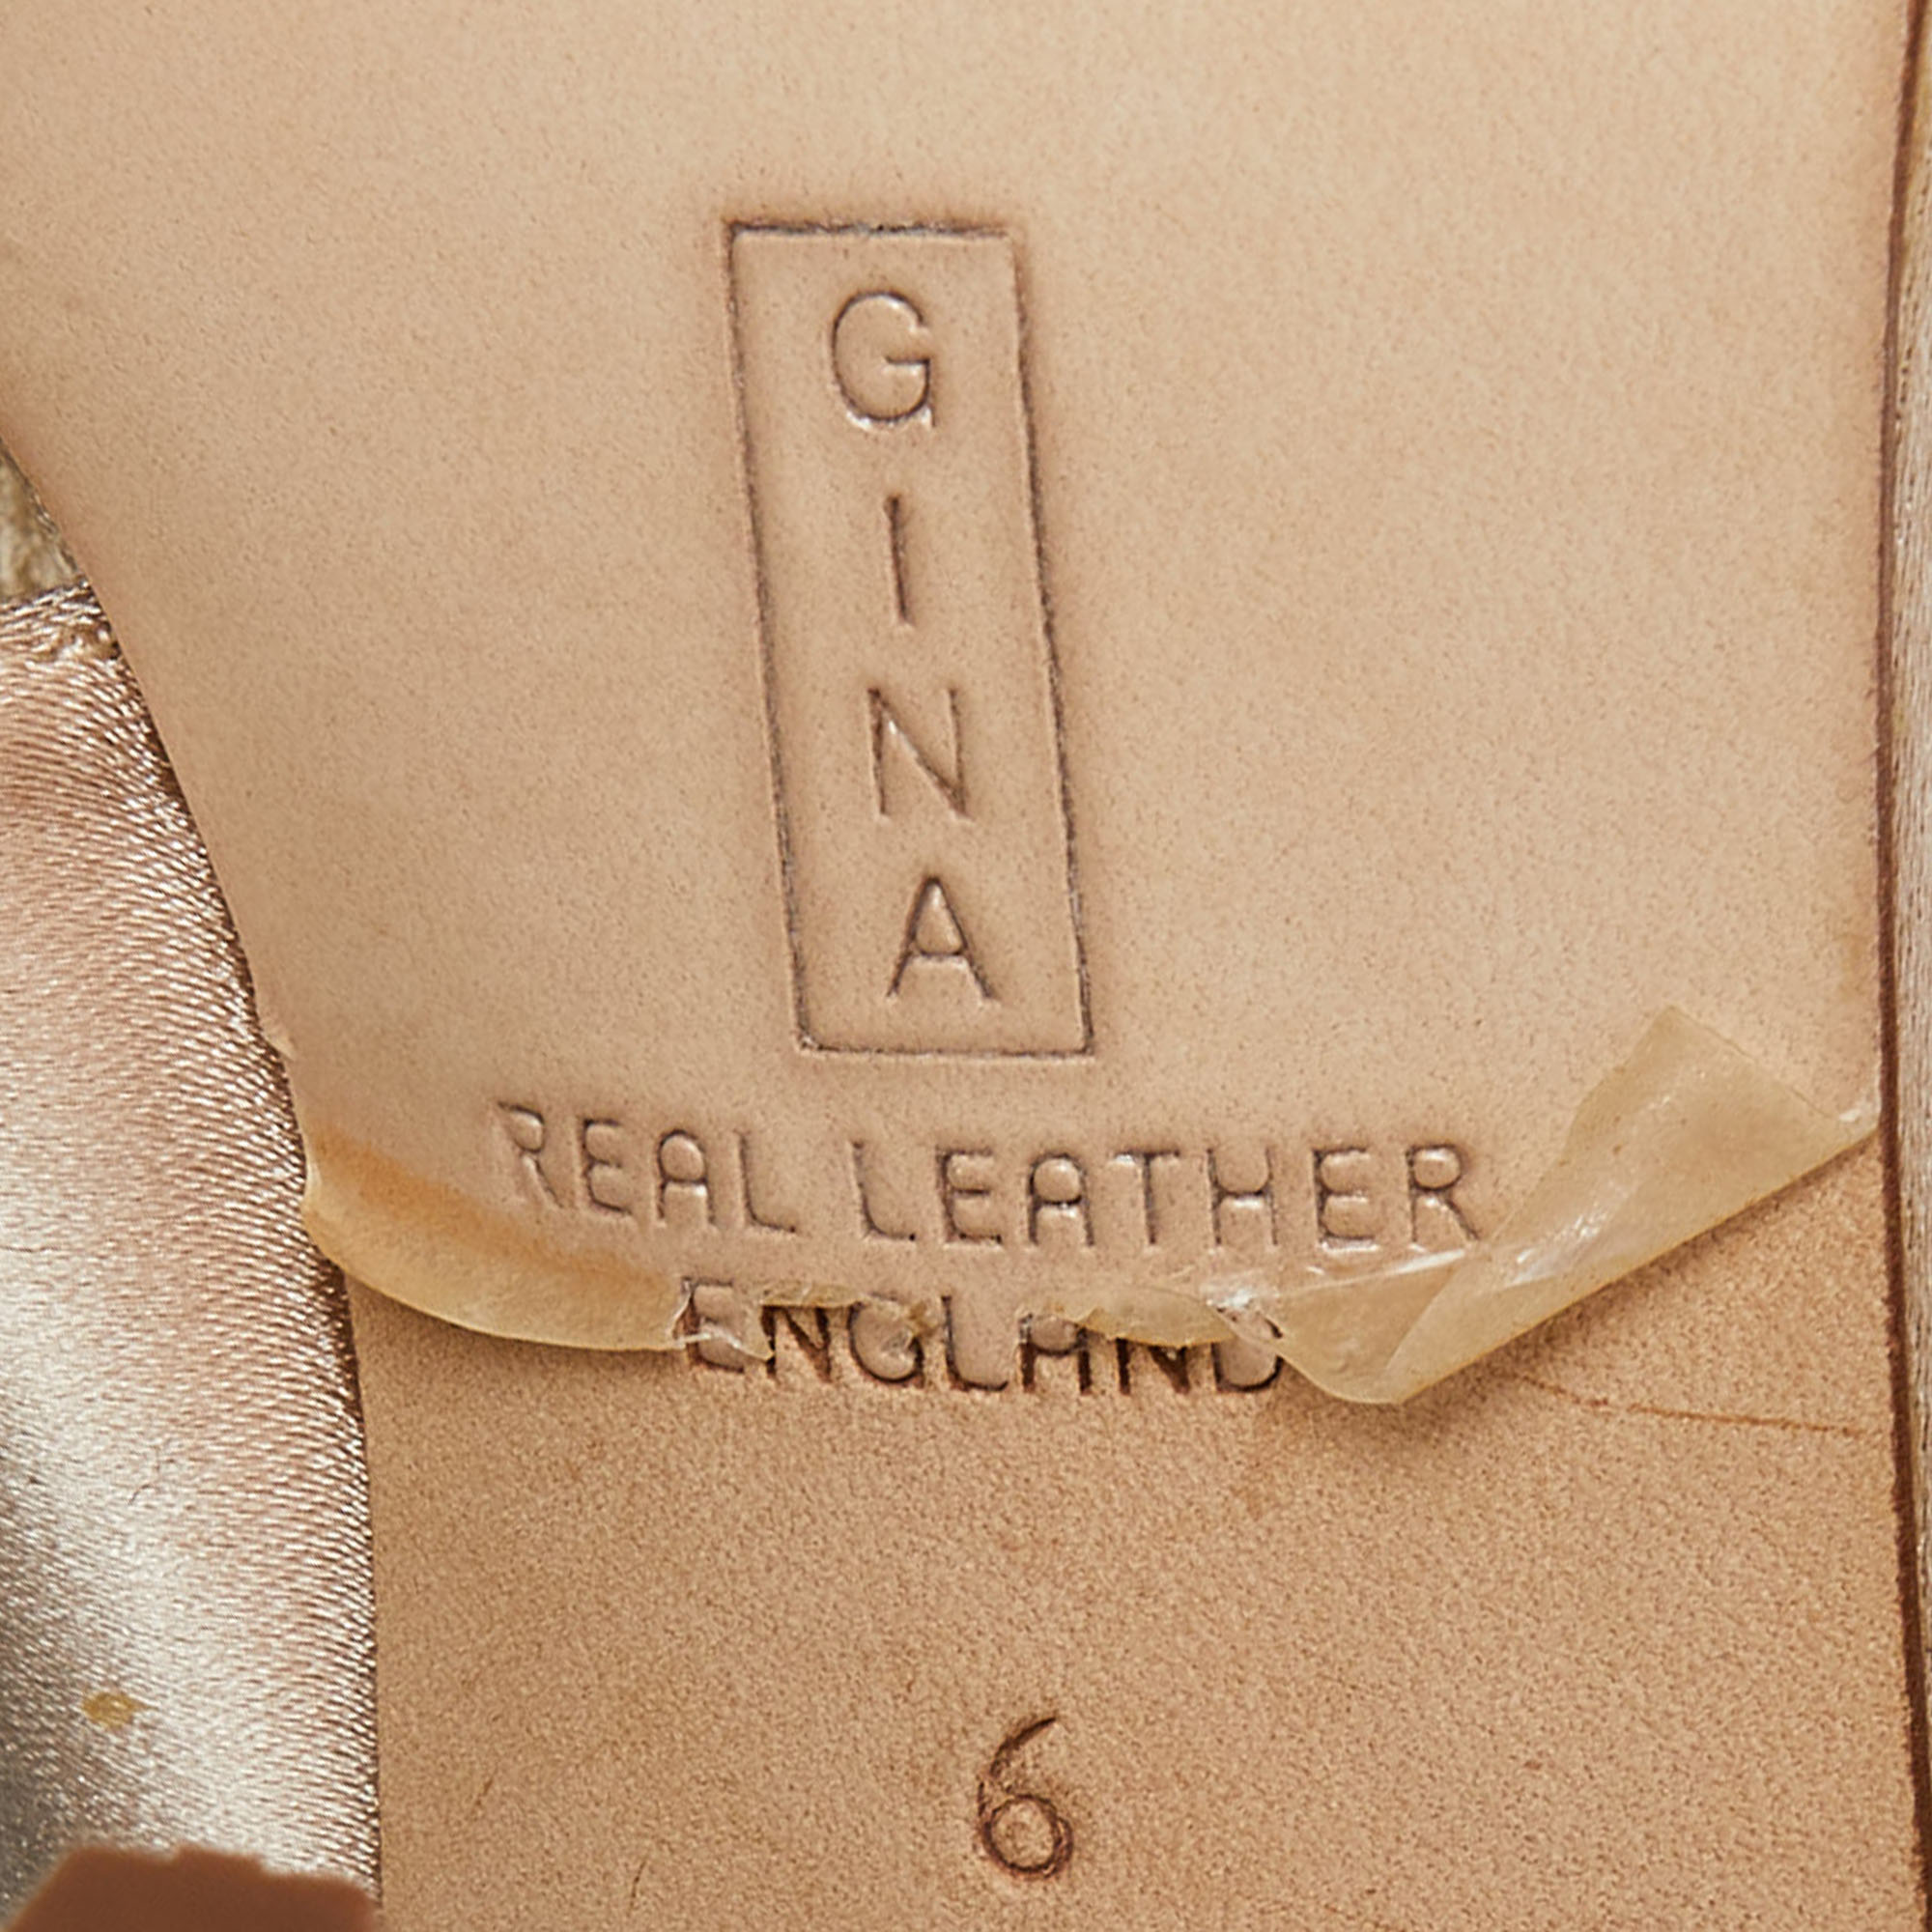 Gina Beige Satin Crystal Embellished Thong Sandals Size 39